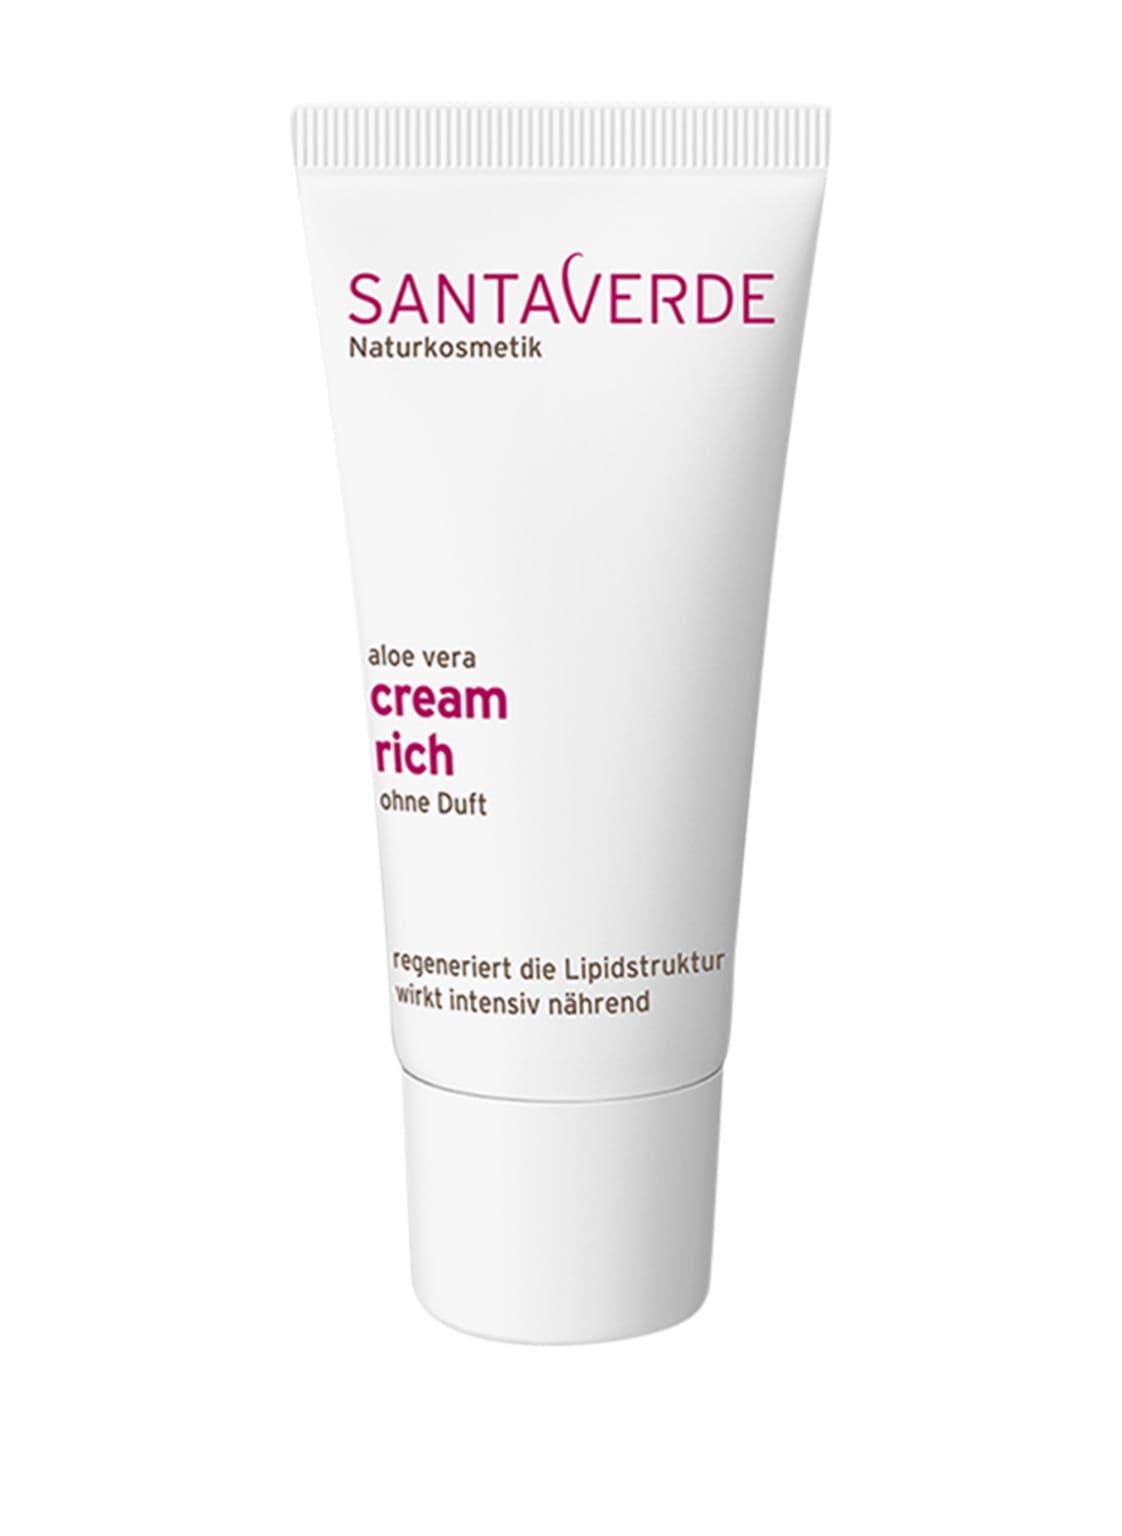 Image of Santaverde Cream Rich Gesichtscreme ohne Duft 30 ml